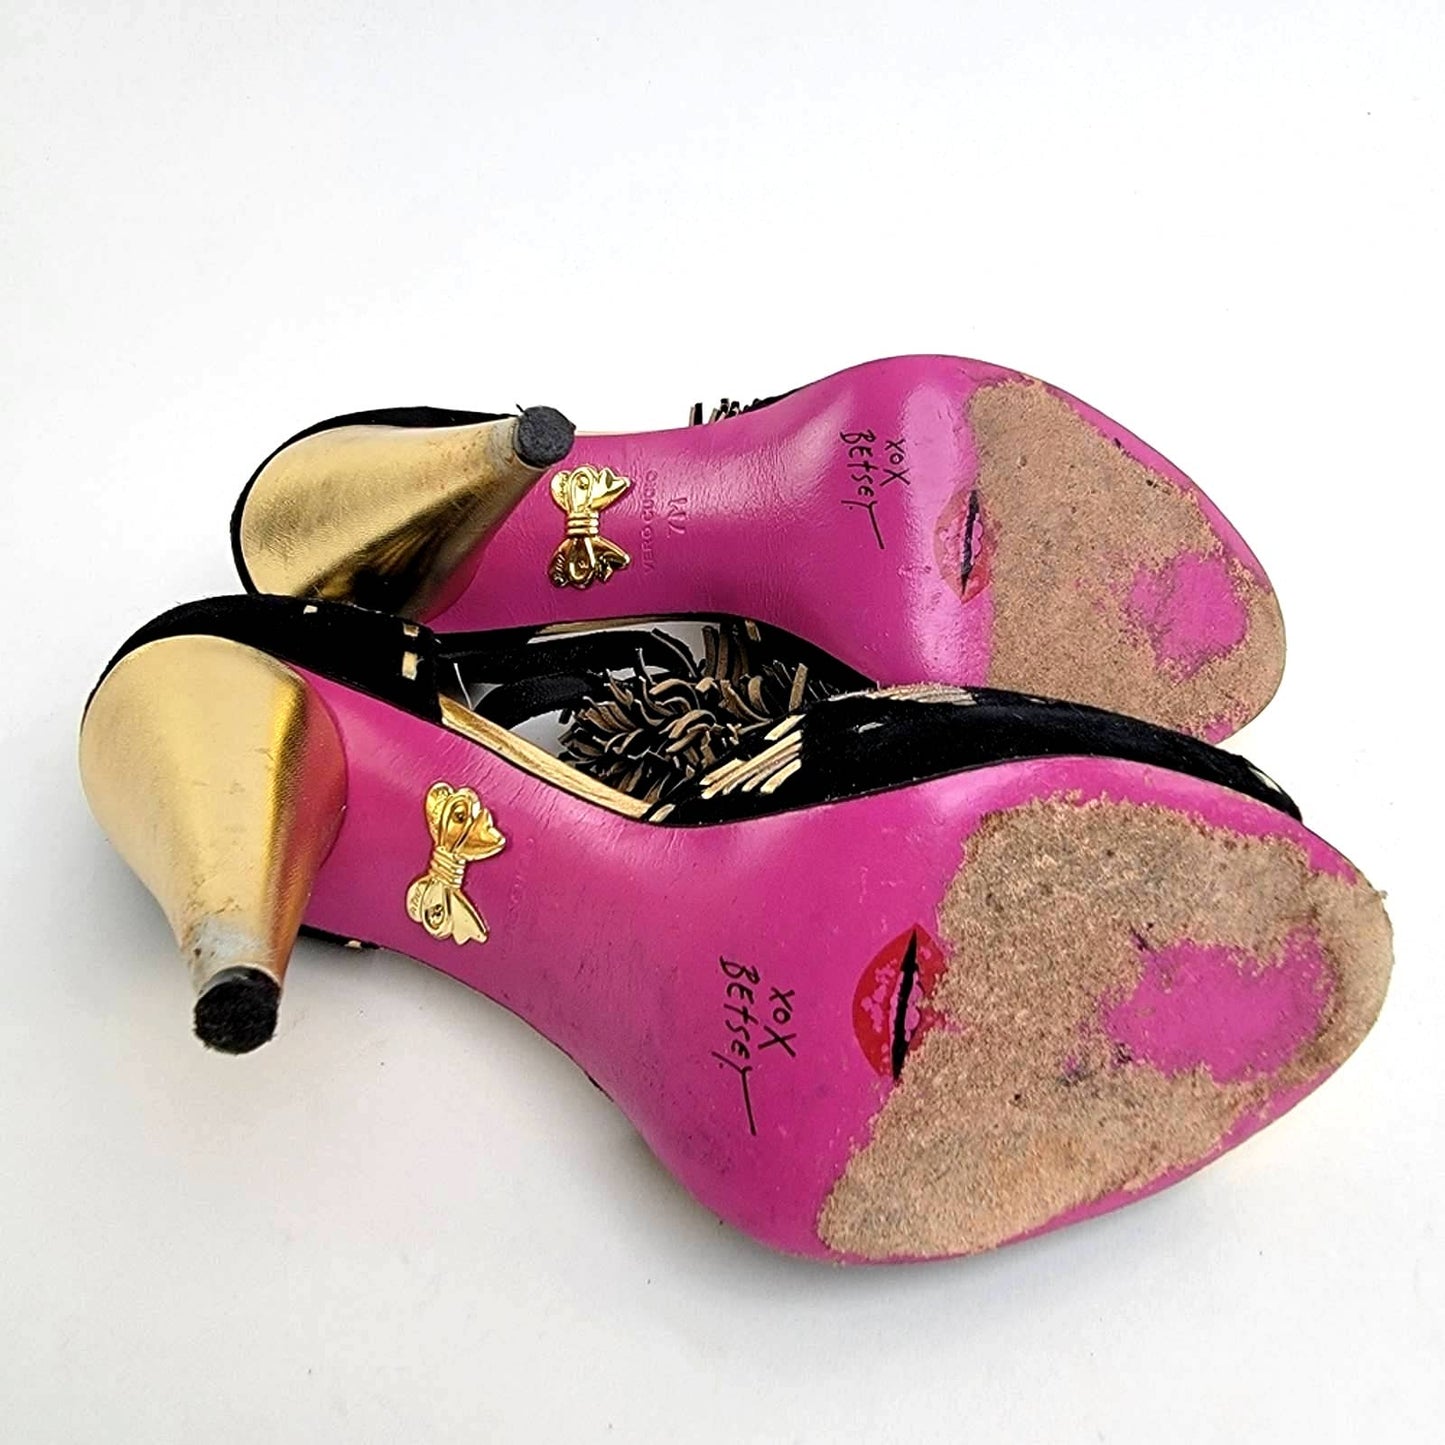 Betsey Johnson Slingback PomPom Tassel Sandal Heels - 7